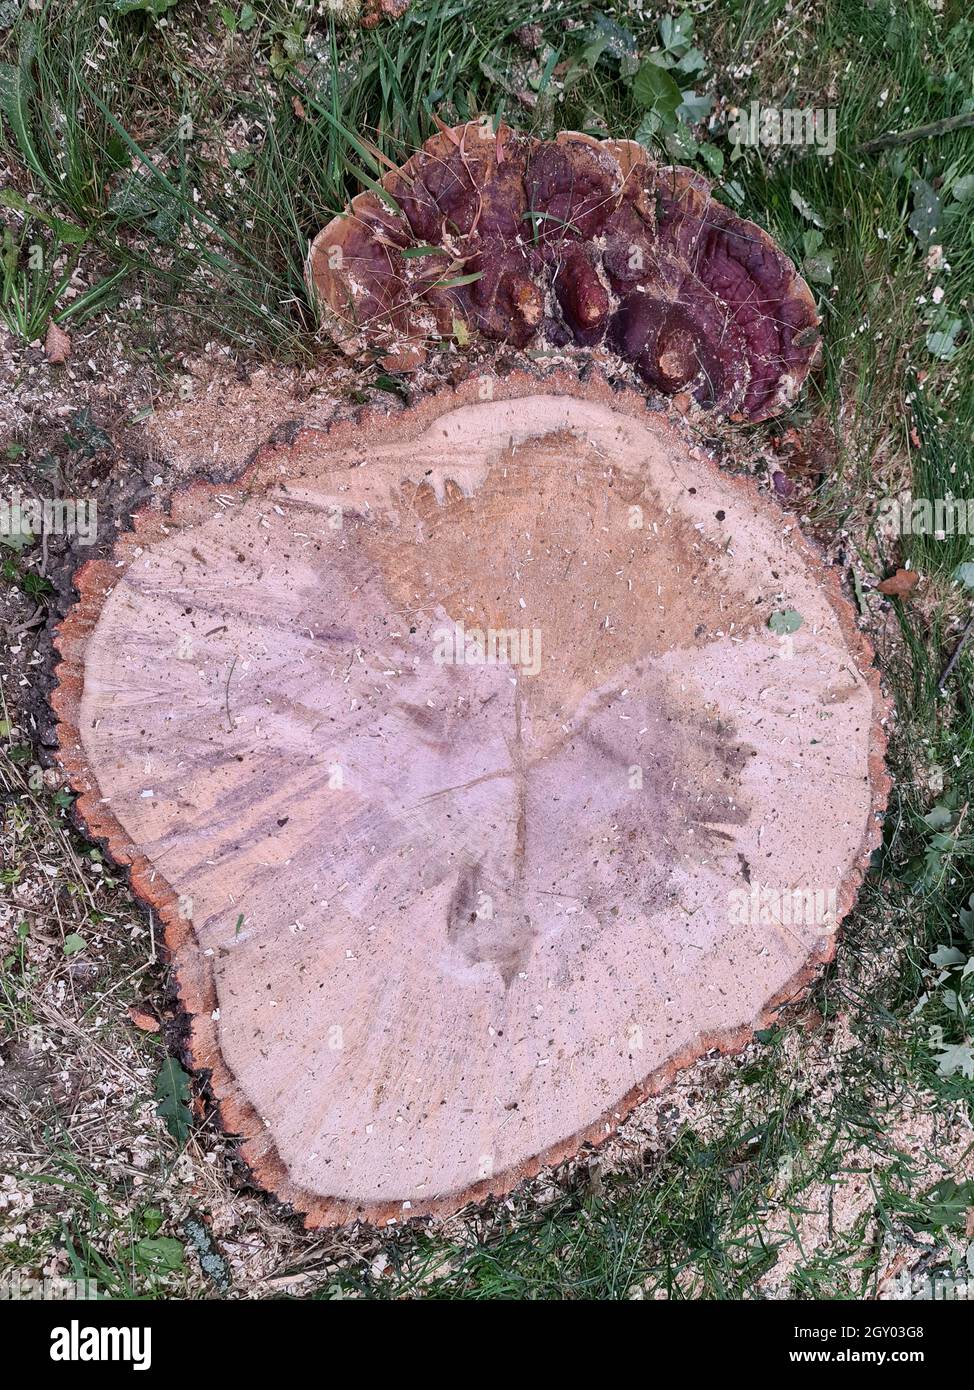 Hongo de la escuadra (Ganoderma resinaceum), creciendo a los pies de un tronco de roble, la razón, por qué el árbol fue talado, Alemania Foto de stock